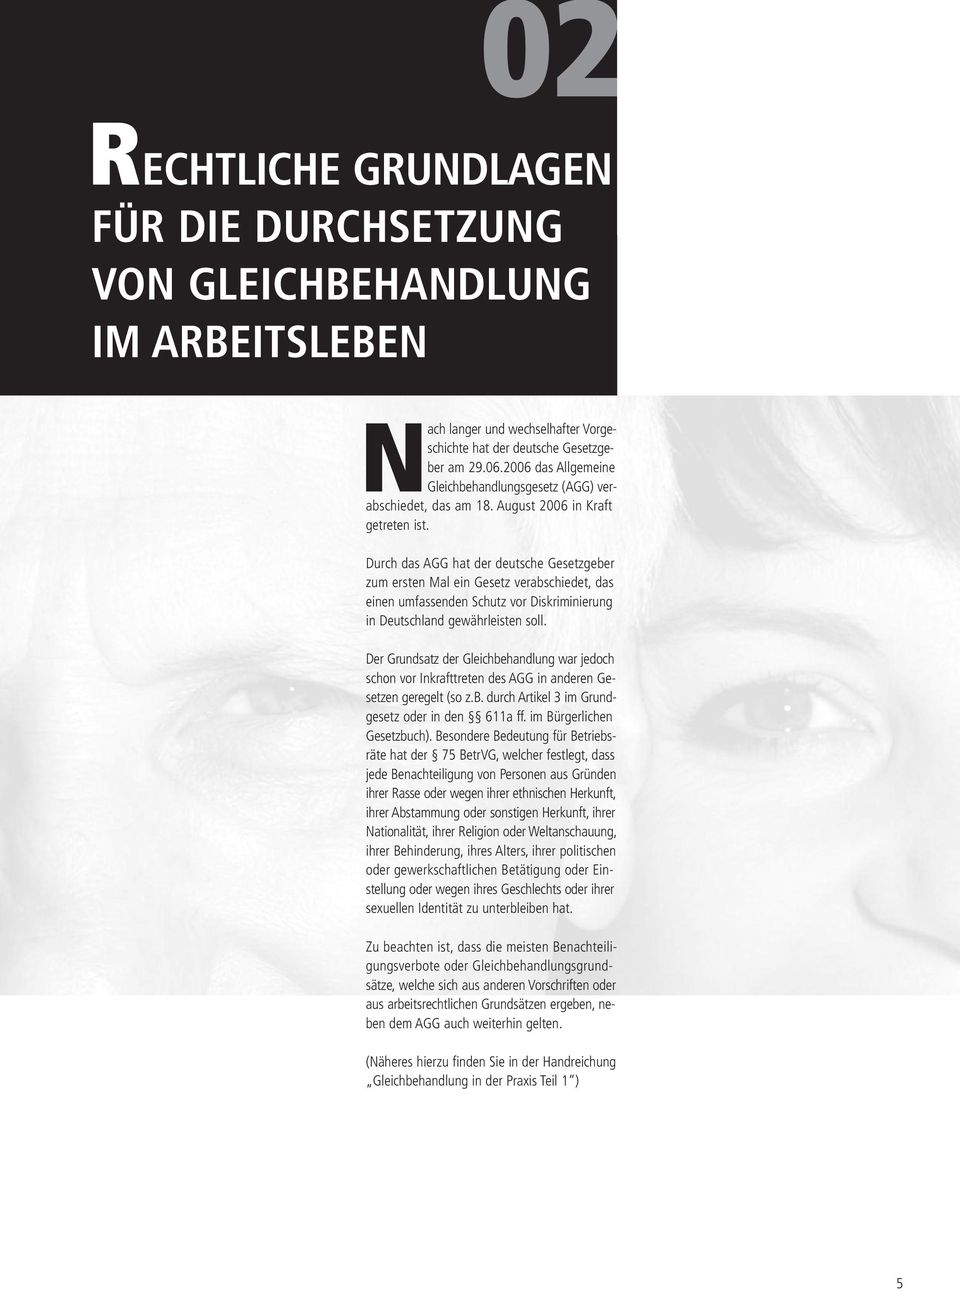 Durch das AGG hat der deutsche Gesetzgeber zum ersten Mal ein Gesetz verabschiedet, das einen umfassenden Schutz vor Diskriminierung in Deutschland gewährleisten soll.